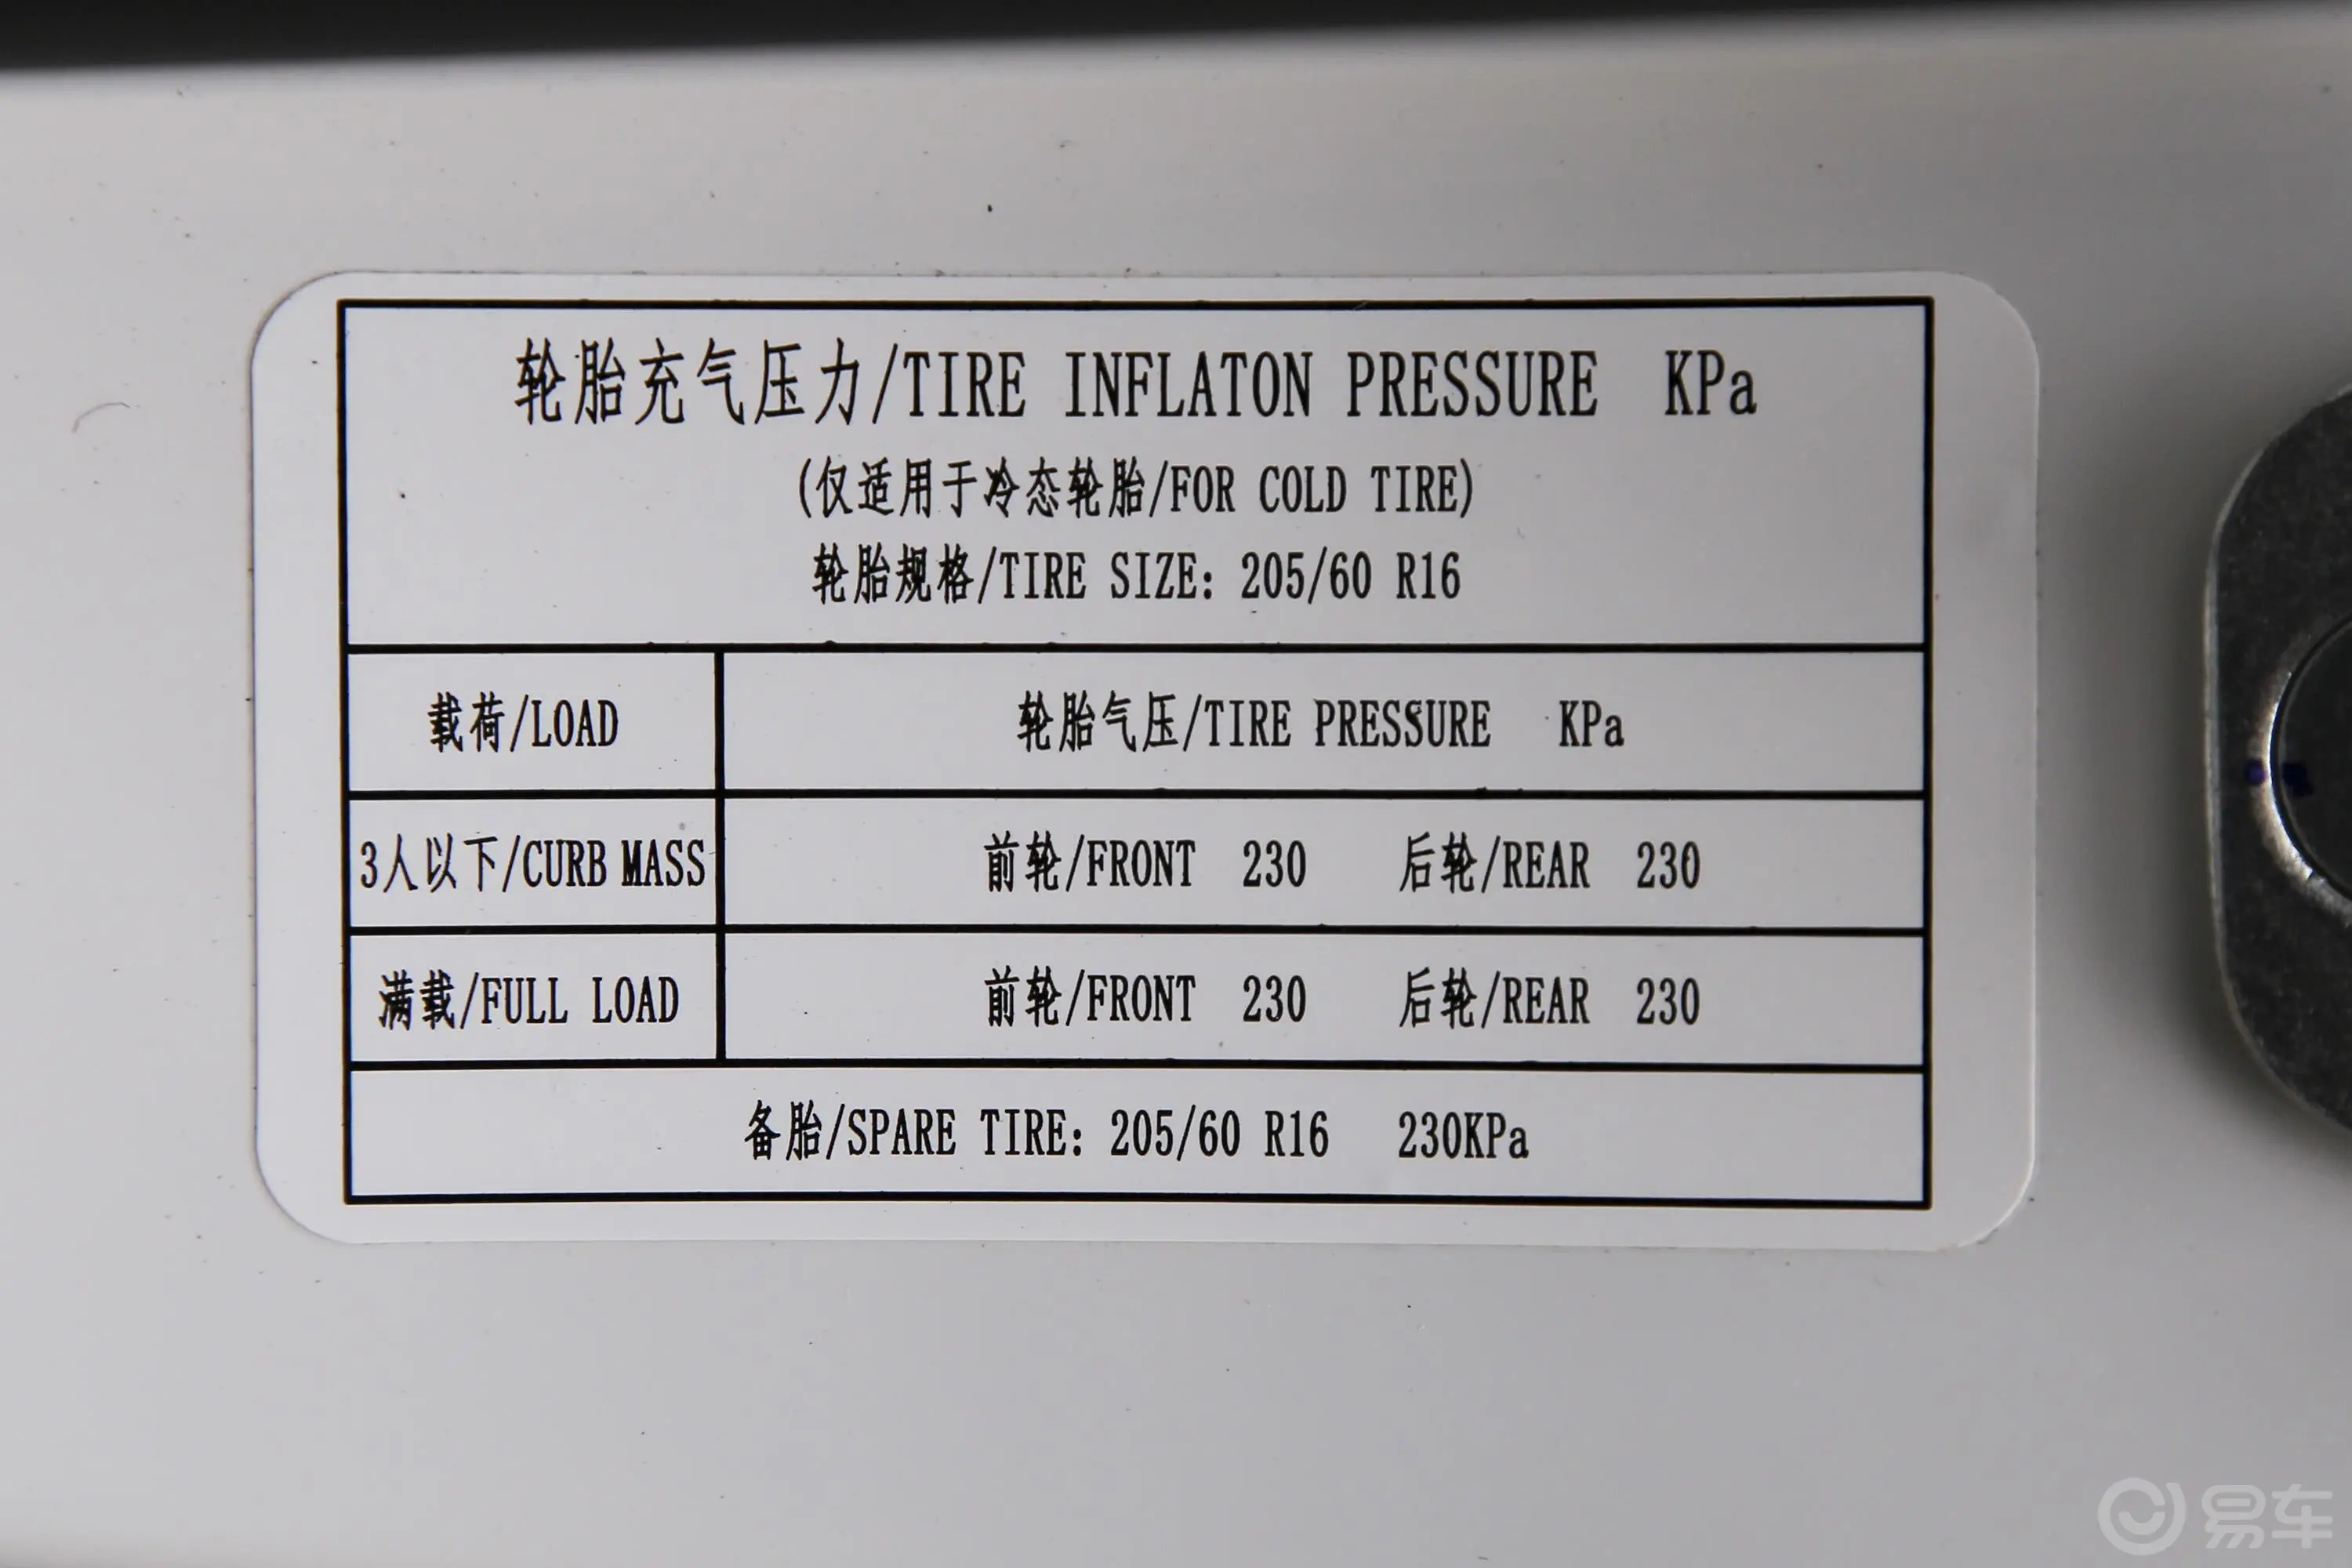 宝骏5101.5L 手动 尊享型 135N·m 国VI胎压信息铭牌